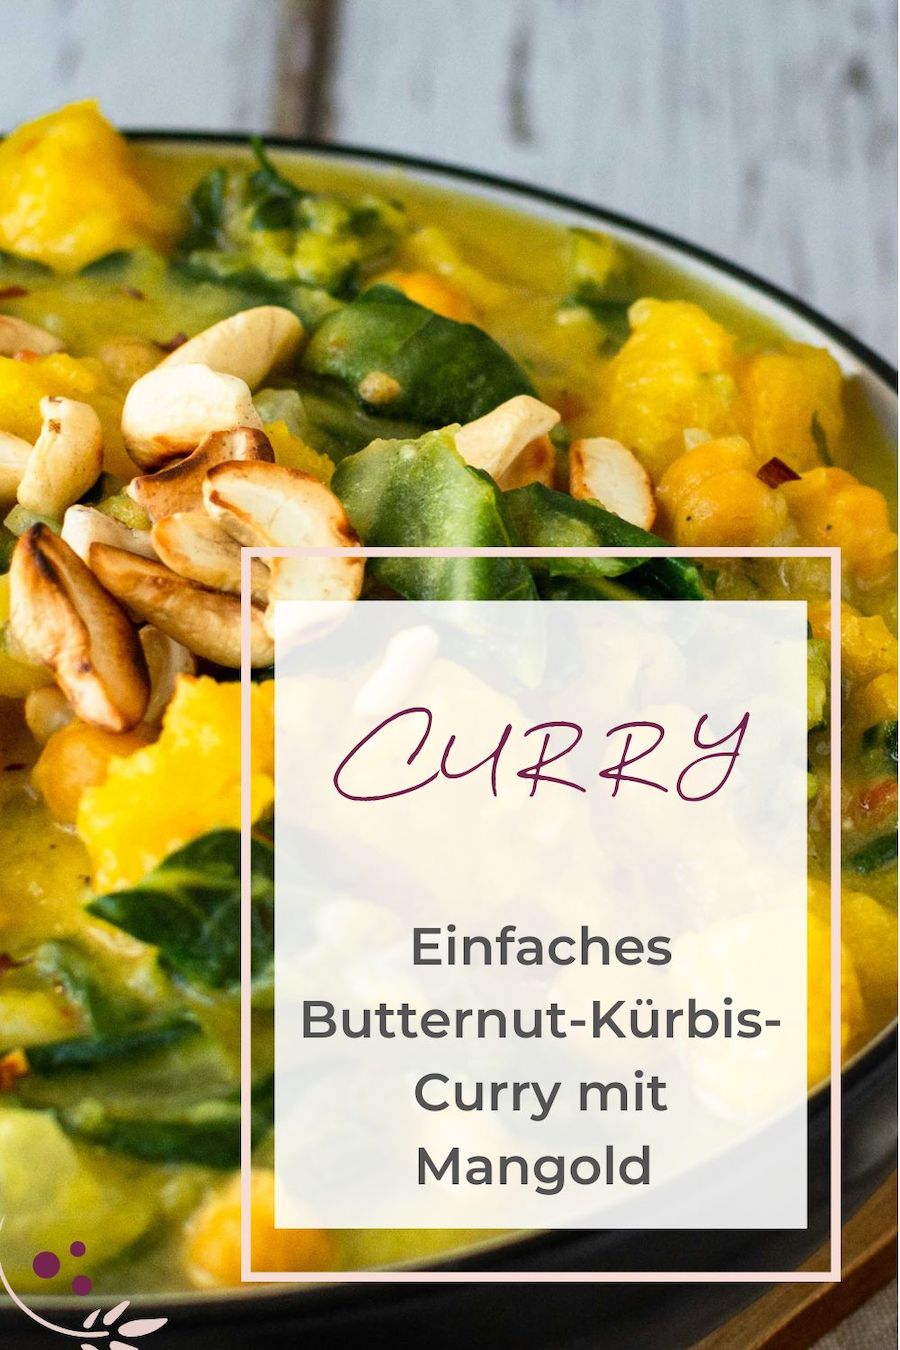 Butternut-Kürbis-Curry mit Mangold und Kichererbsen im Hintergrund, darüber der Schriftzug "Einfaches Butternut-Kürbis-Curry mit Mangold".